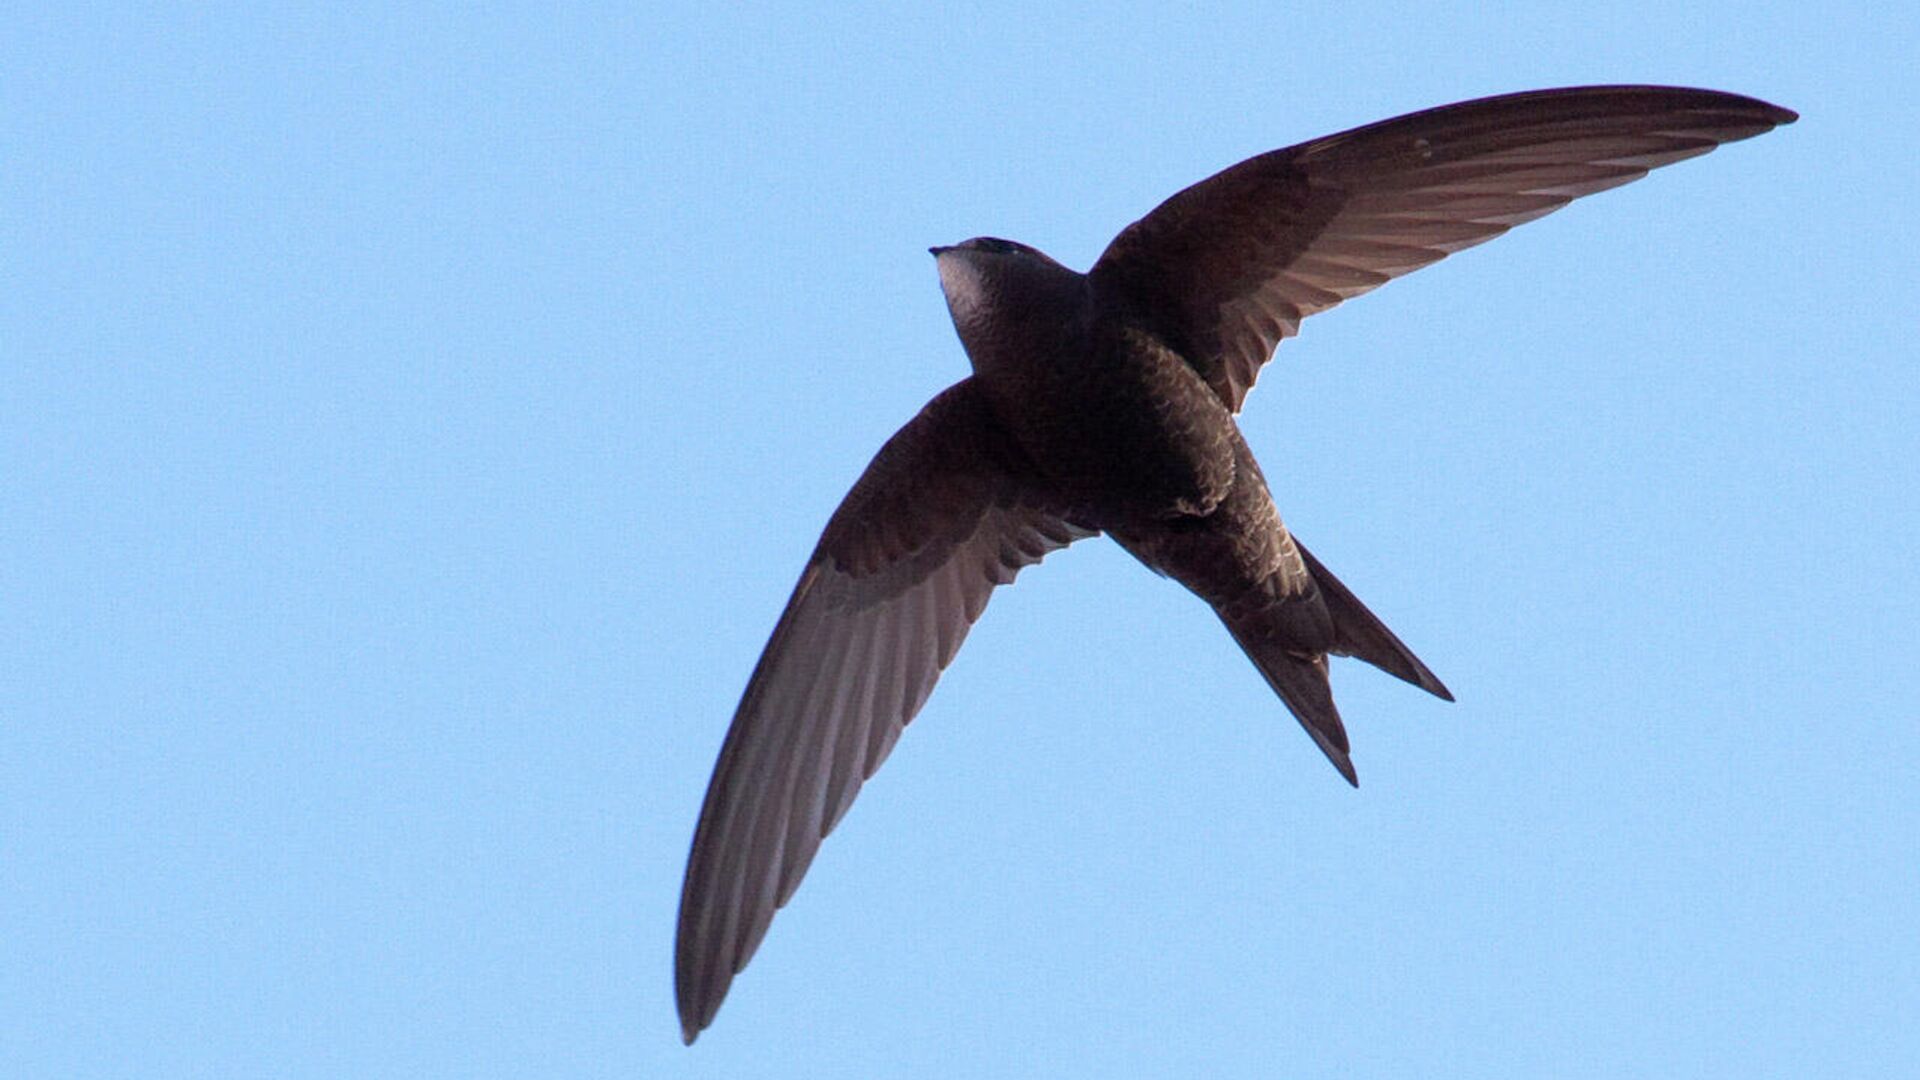 Ученые зафиксировали новый рекорд скорости полета птиц